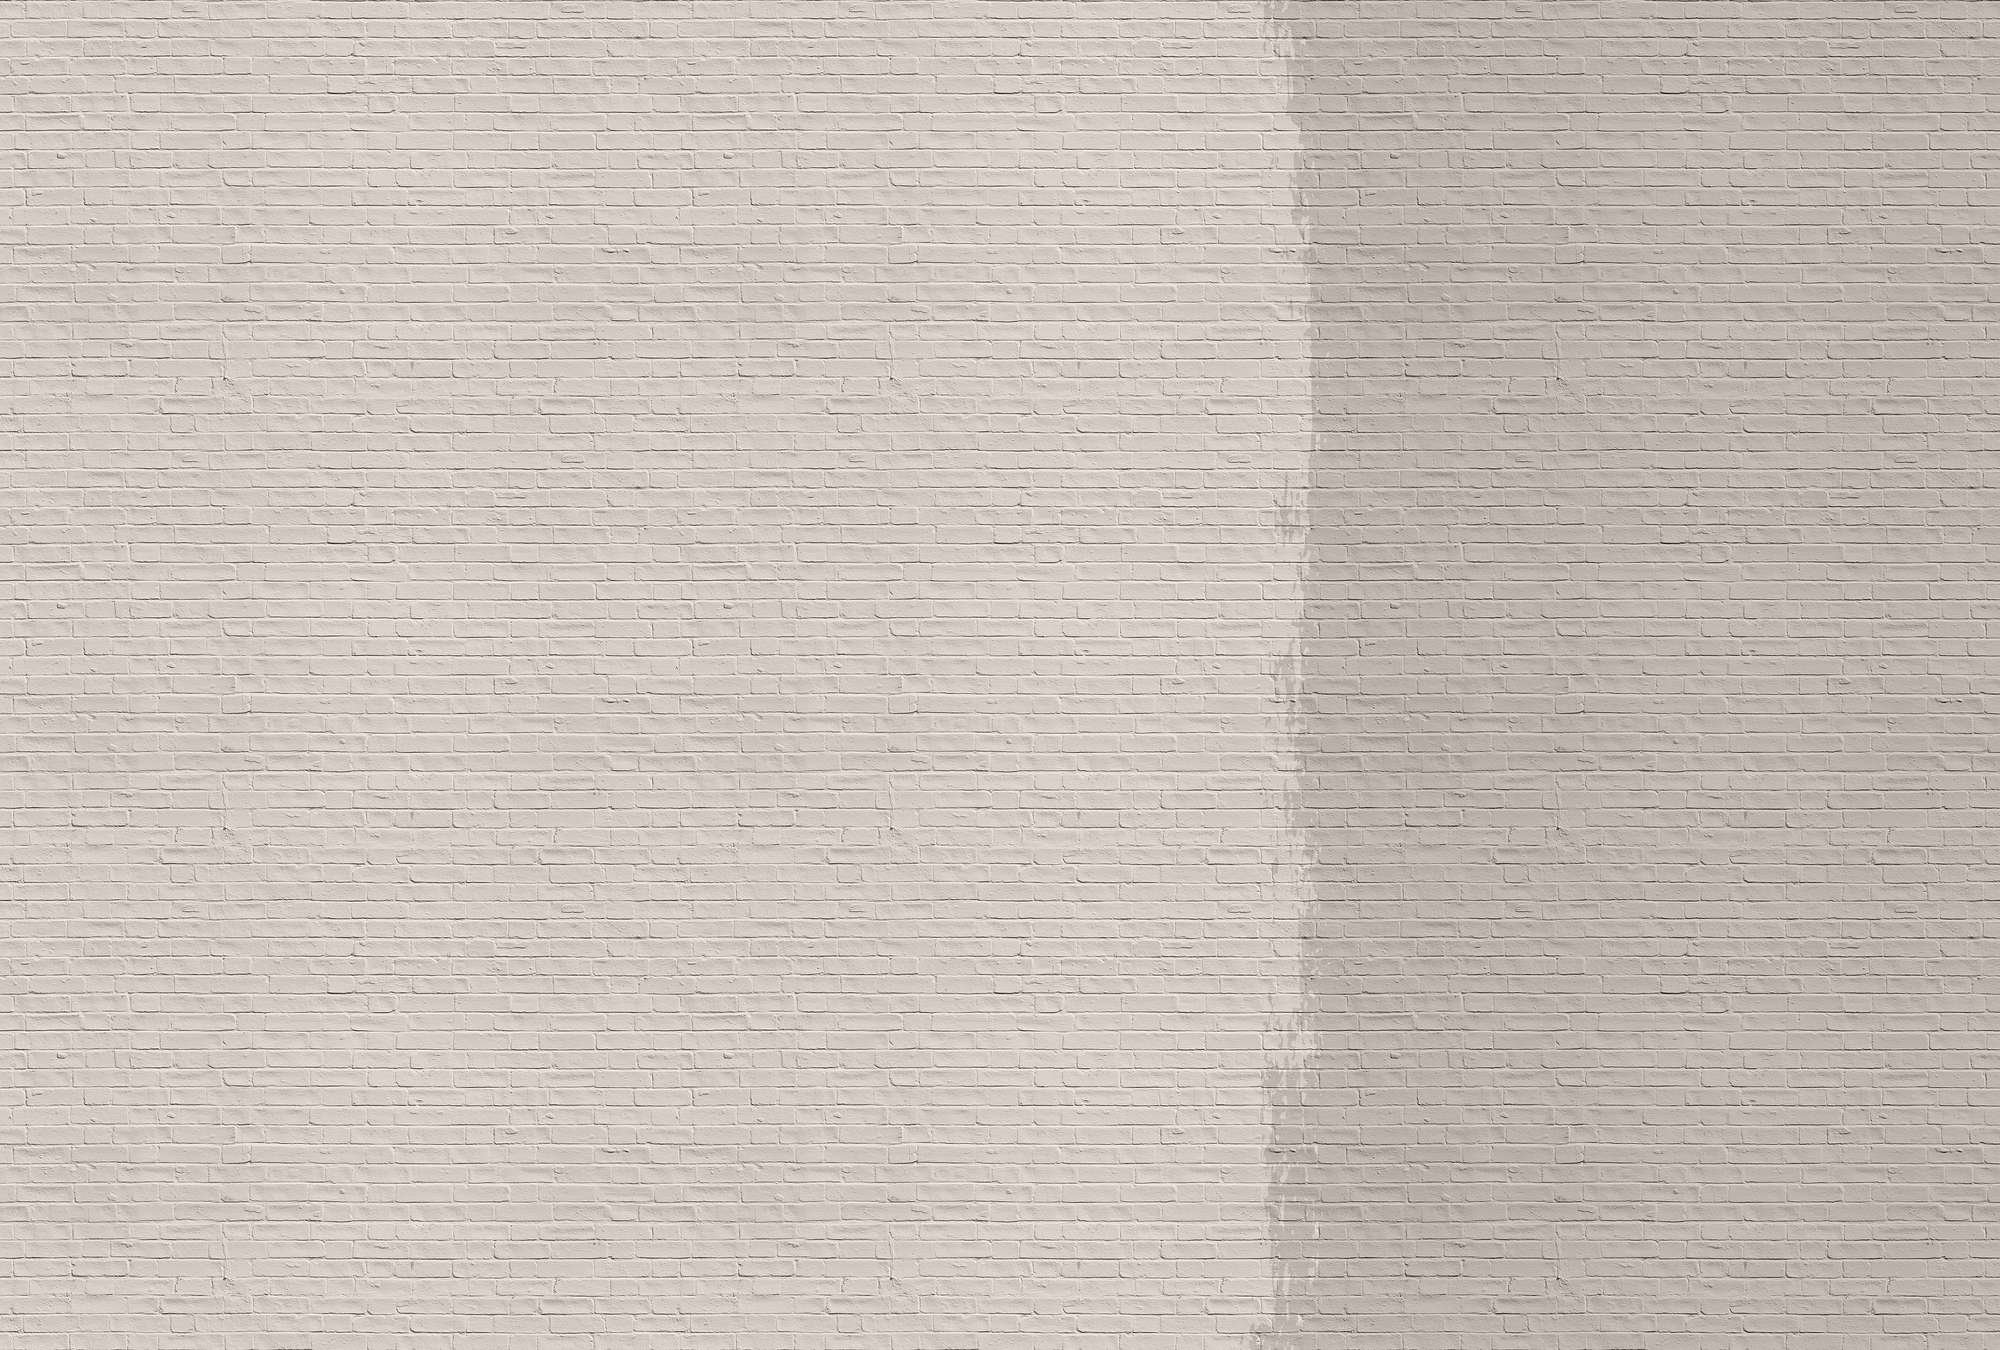             Tainted love 1 - Papier peint mur de briques peint - beige, taupe | structure intissé
        